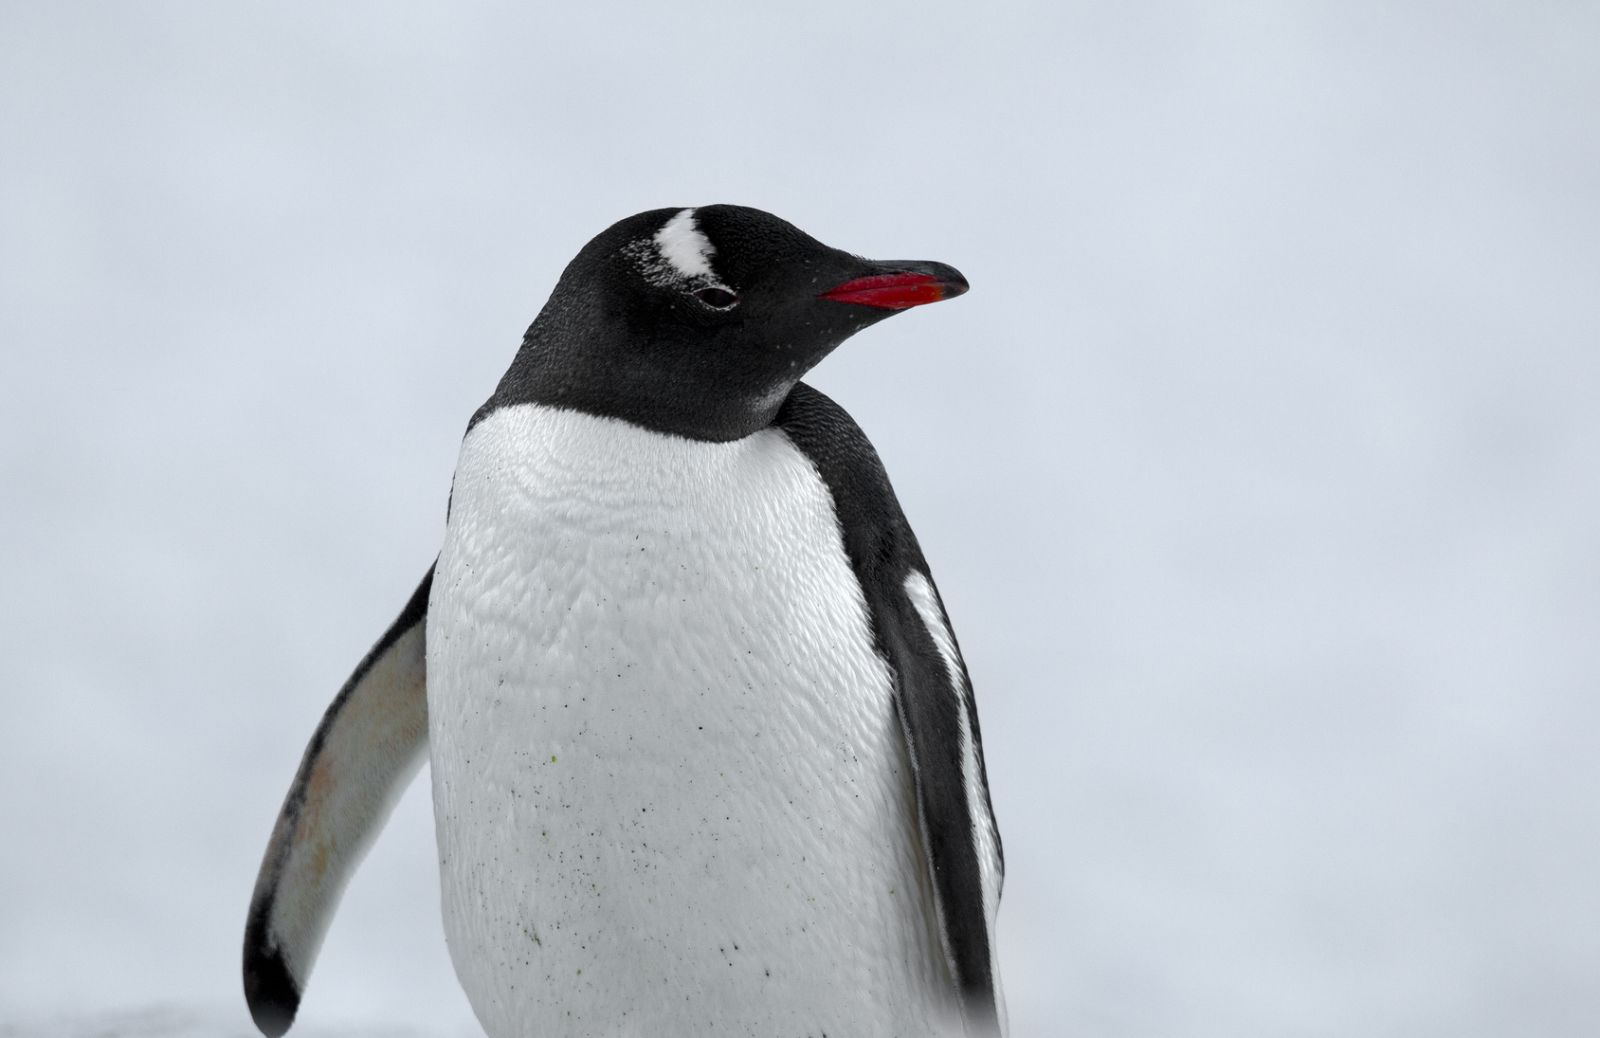 Cambiamenti climatici: un pinguino ci svelerà gli effetti sull'ecosistema 